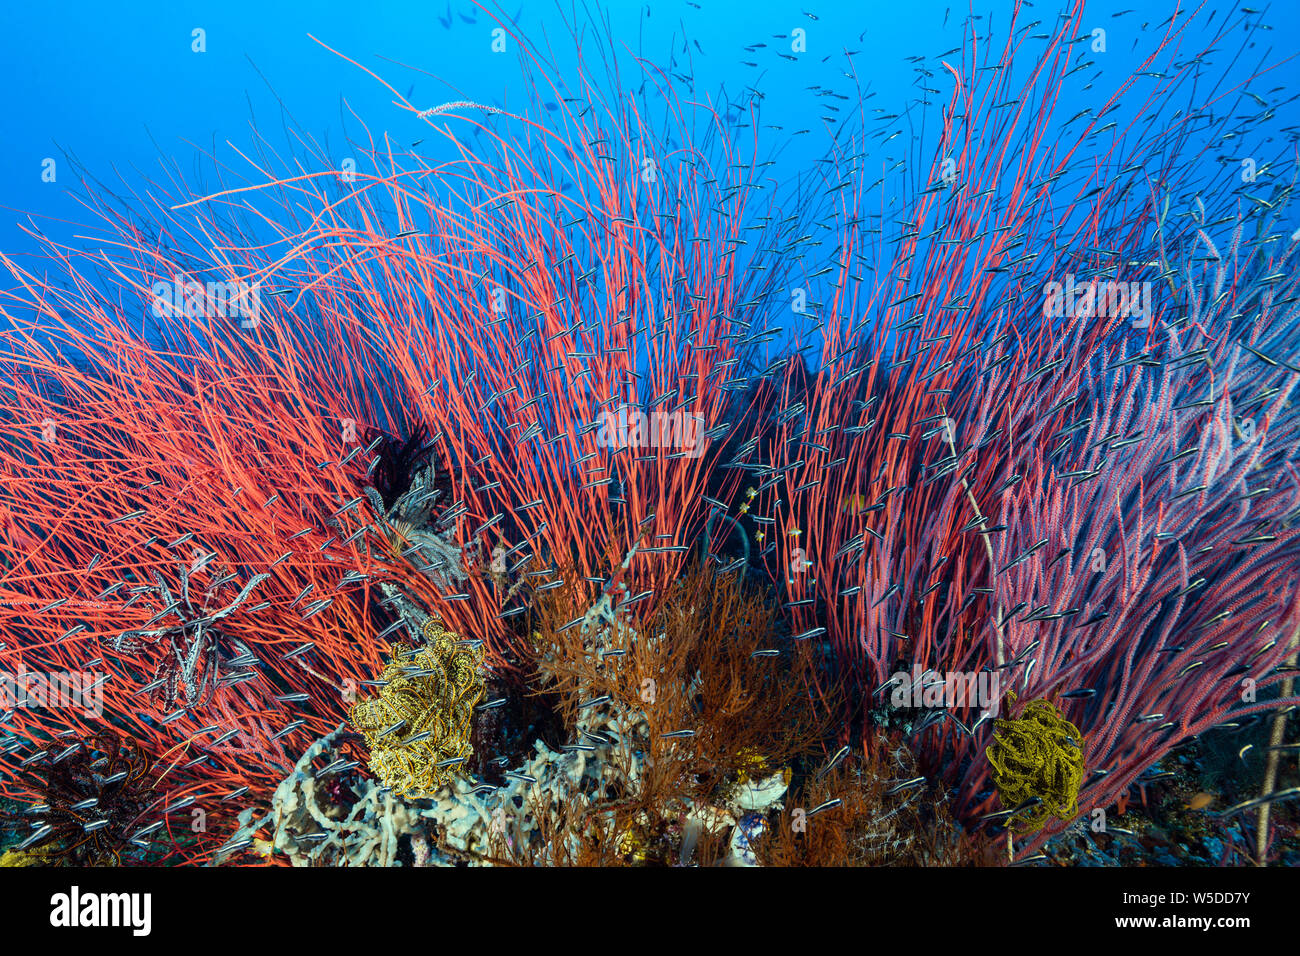 Les coraux des récifs coralliens en whip, Ellisella ceratophyta, Kimbe Bay, New Britain, Papouasie Nouvelle Guinée Banque D'Images